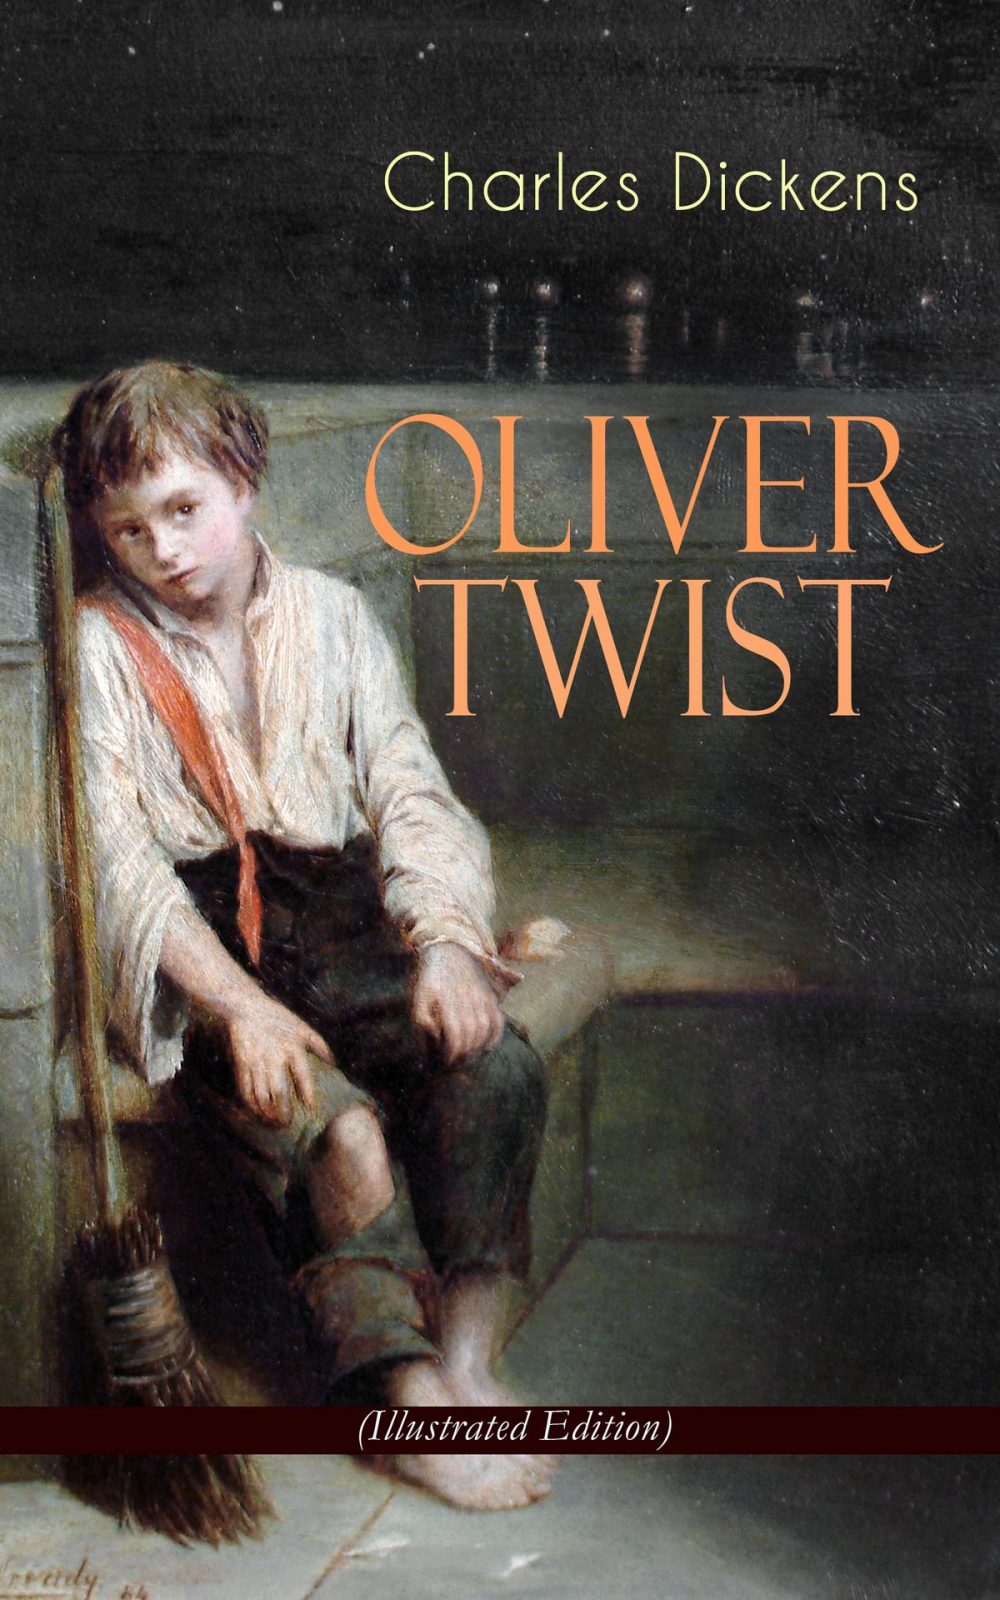 anh dai dien oliver twist e1588769474334 - Charles Dickens: Nhà văn vĩ đại của nền văn học Anh quốc